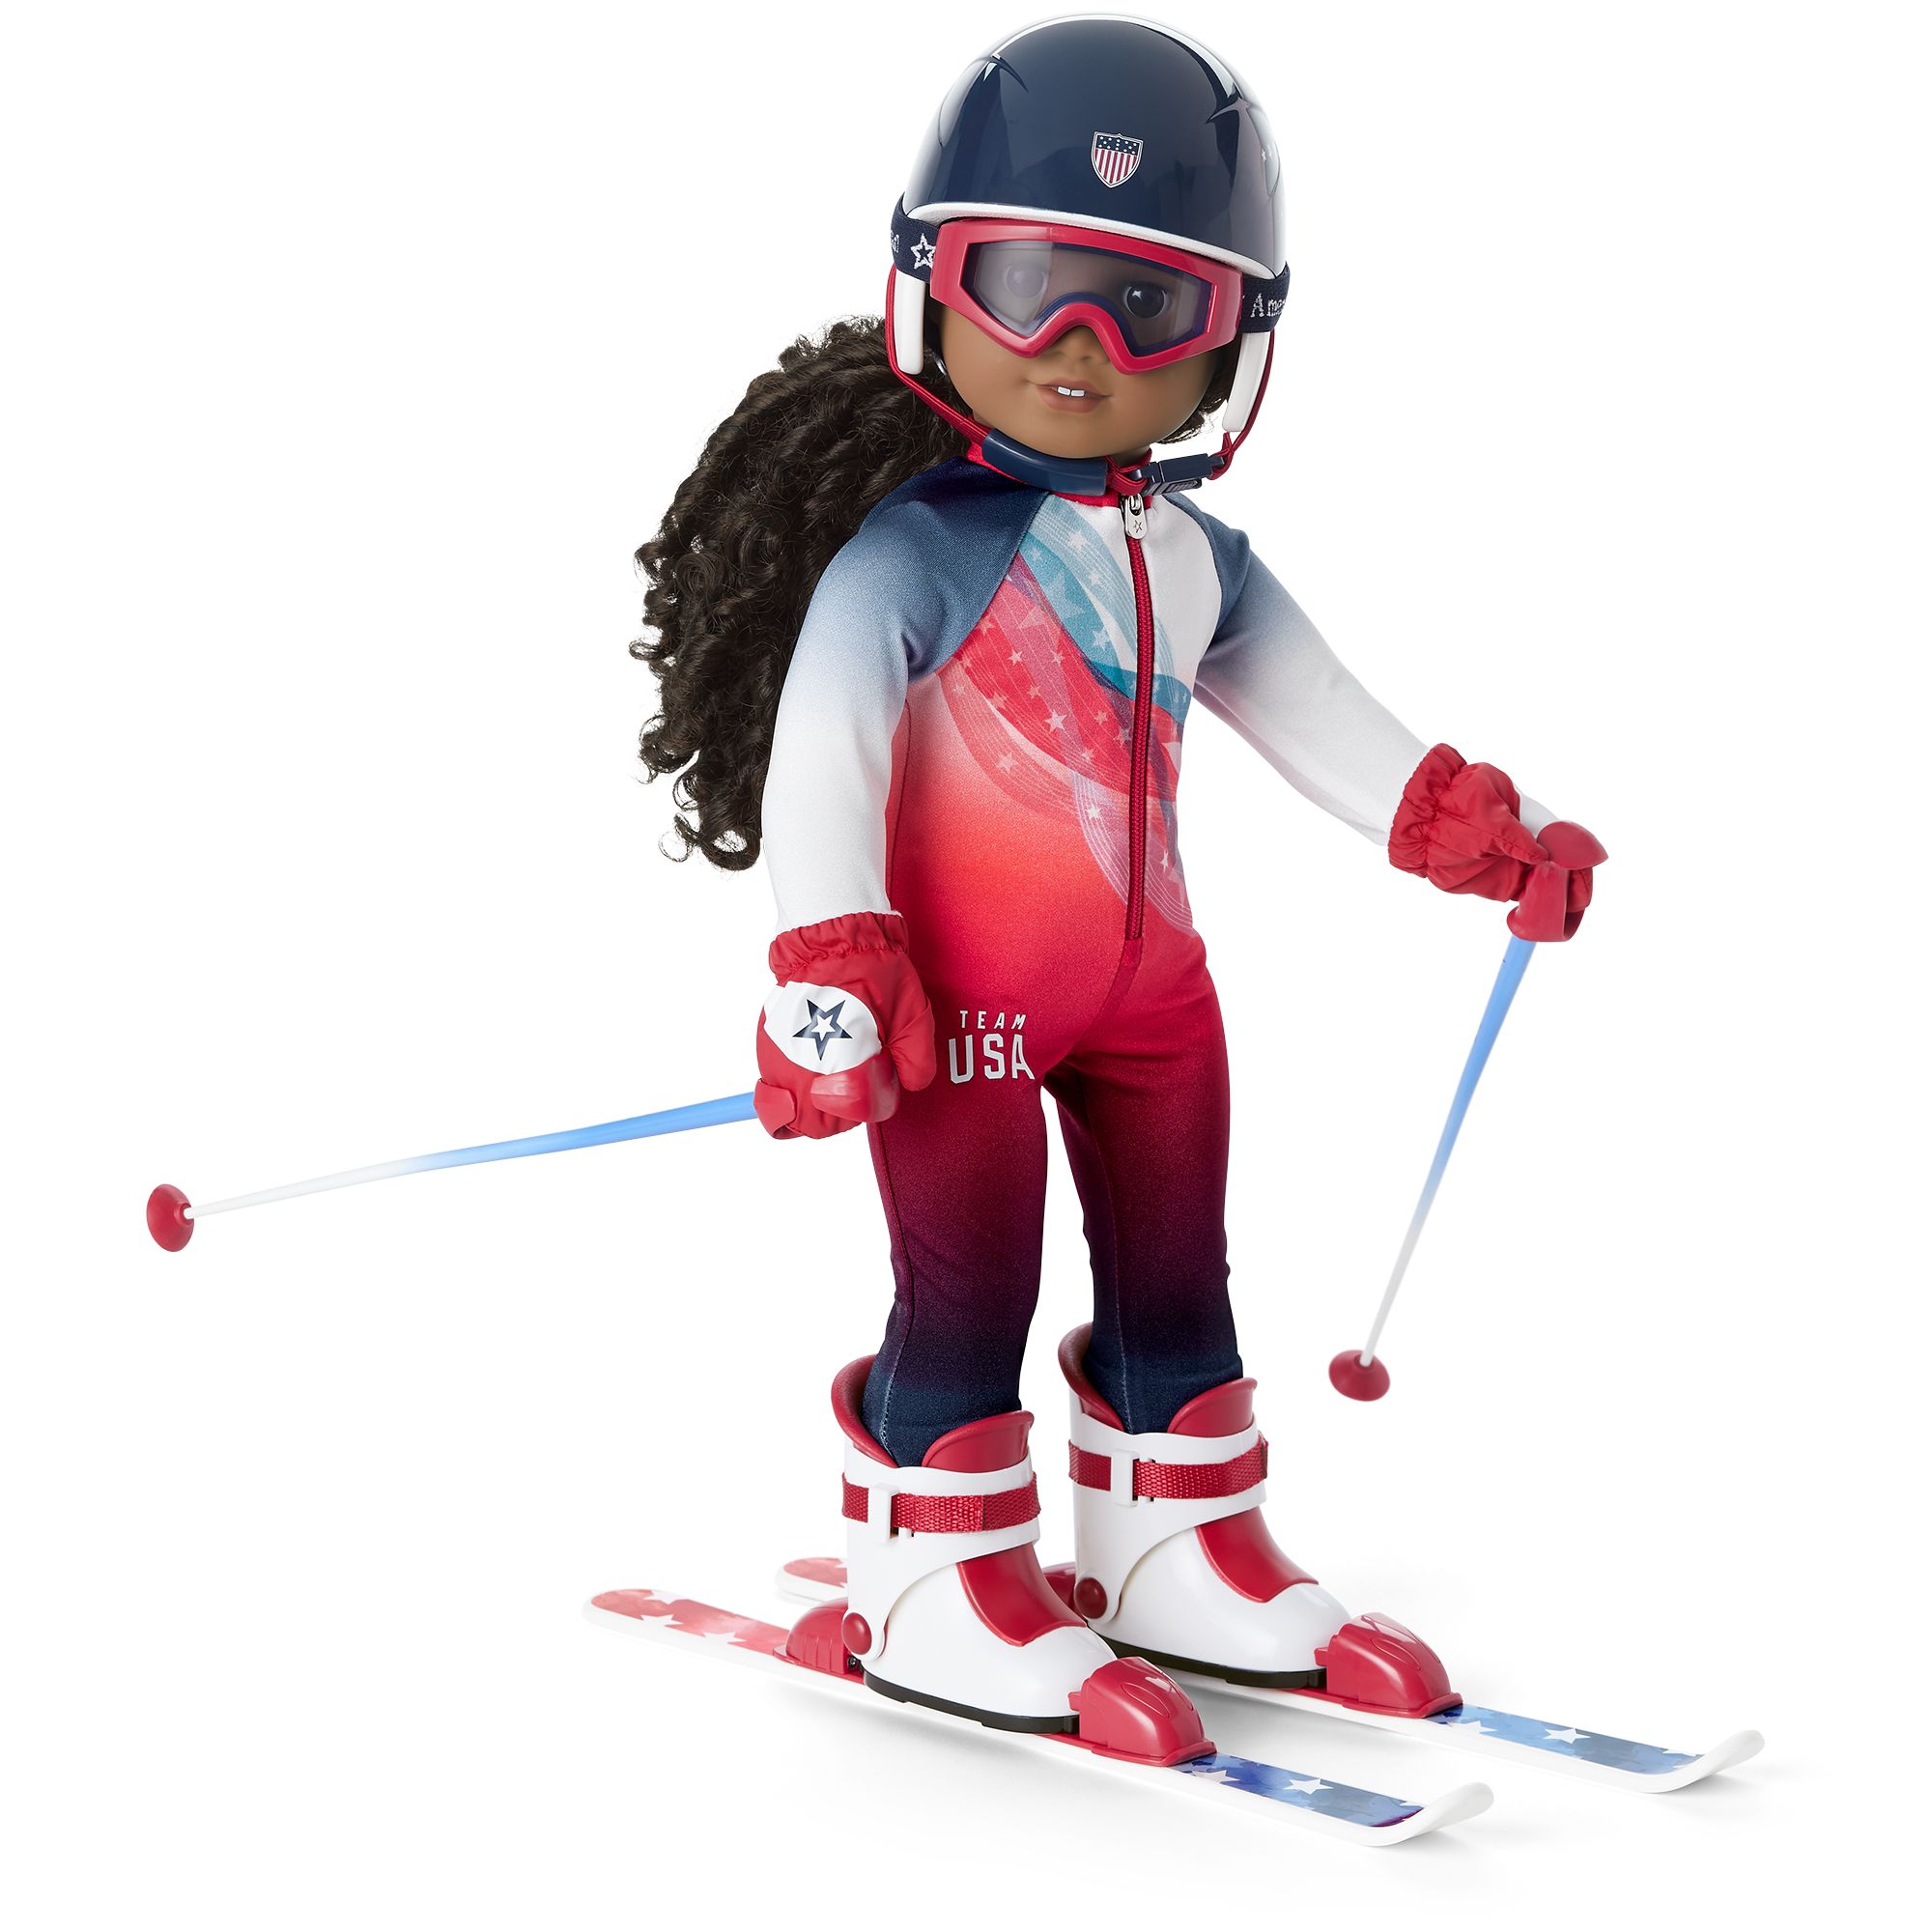 Ski set. Кукла на лыжах. Кукла в лыжном костюме. Рейнбоу лыжница кукла. Кукла горнолыжная мальчик.